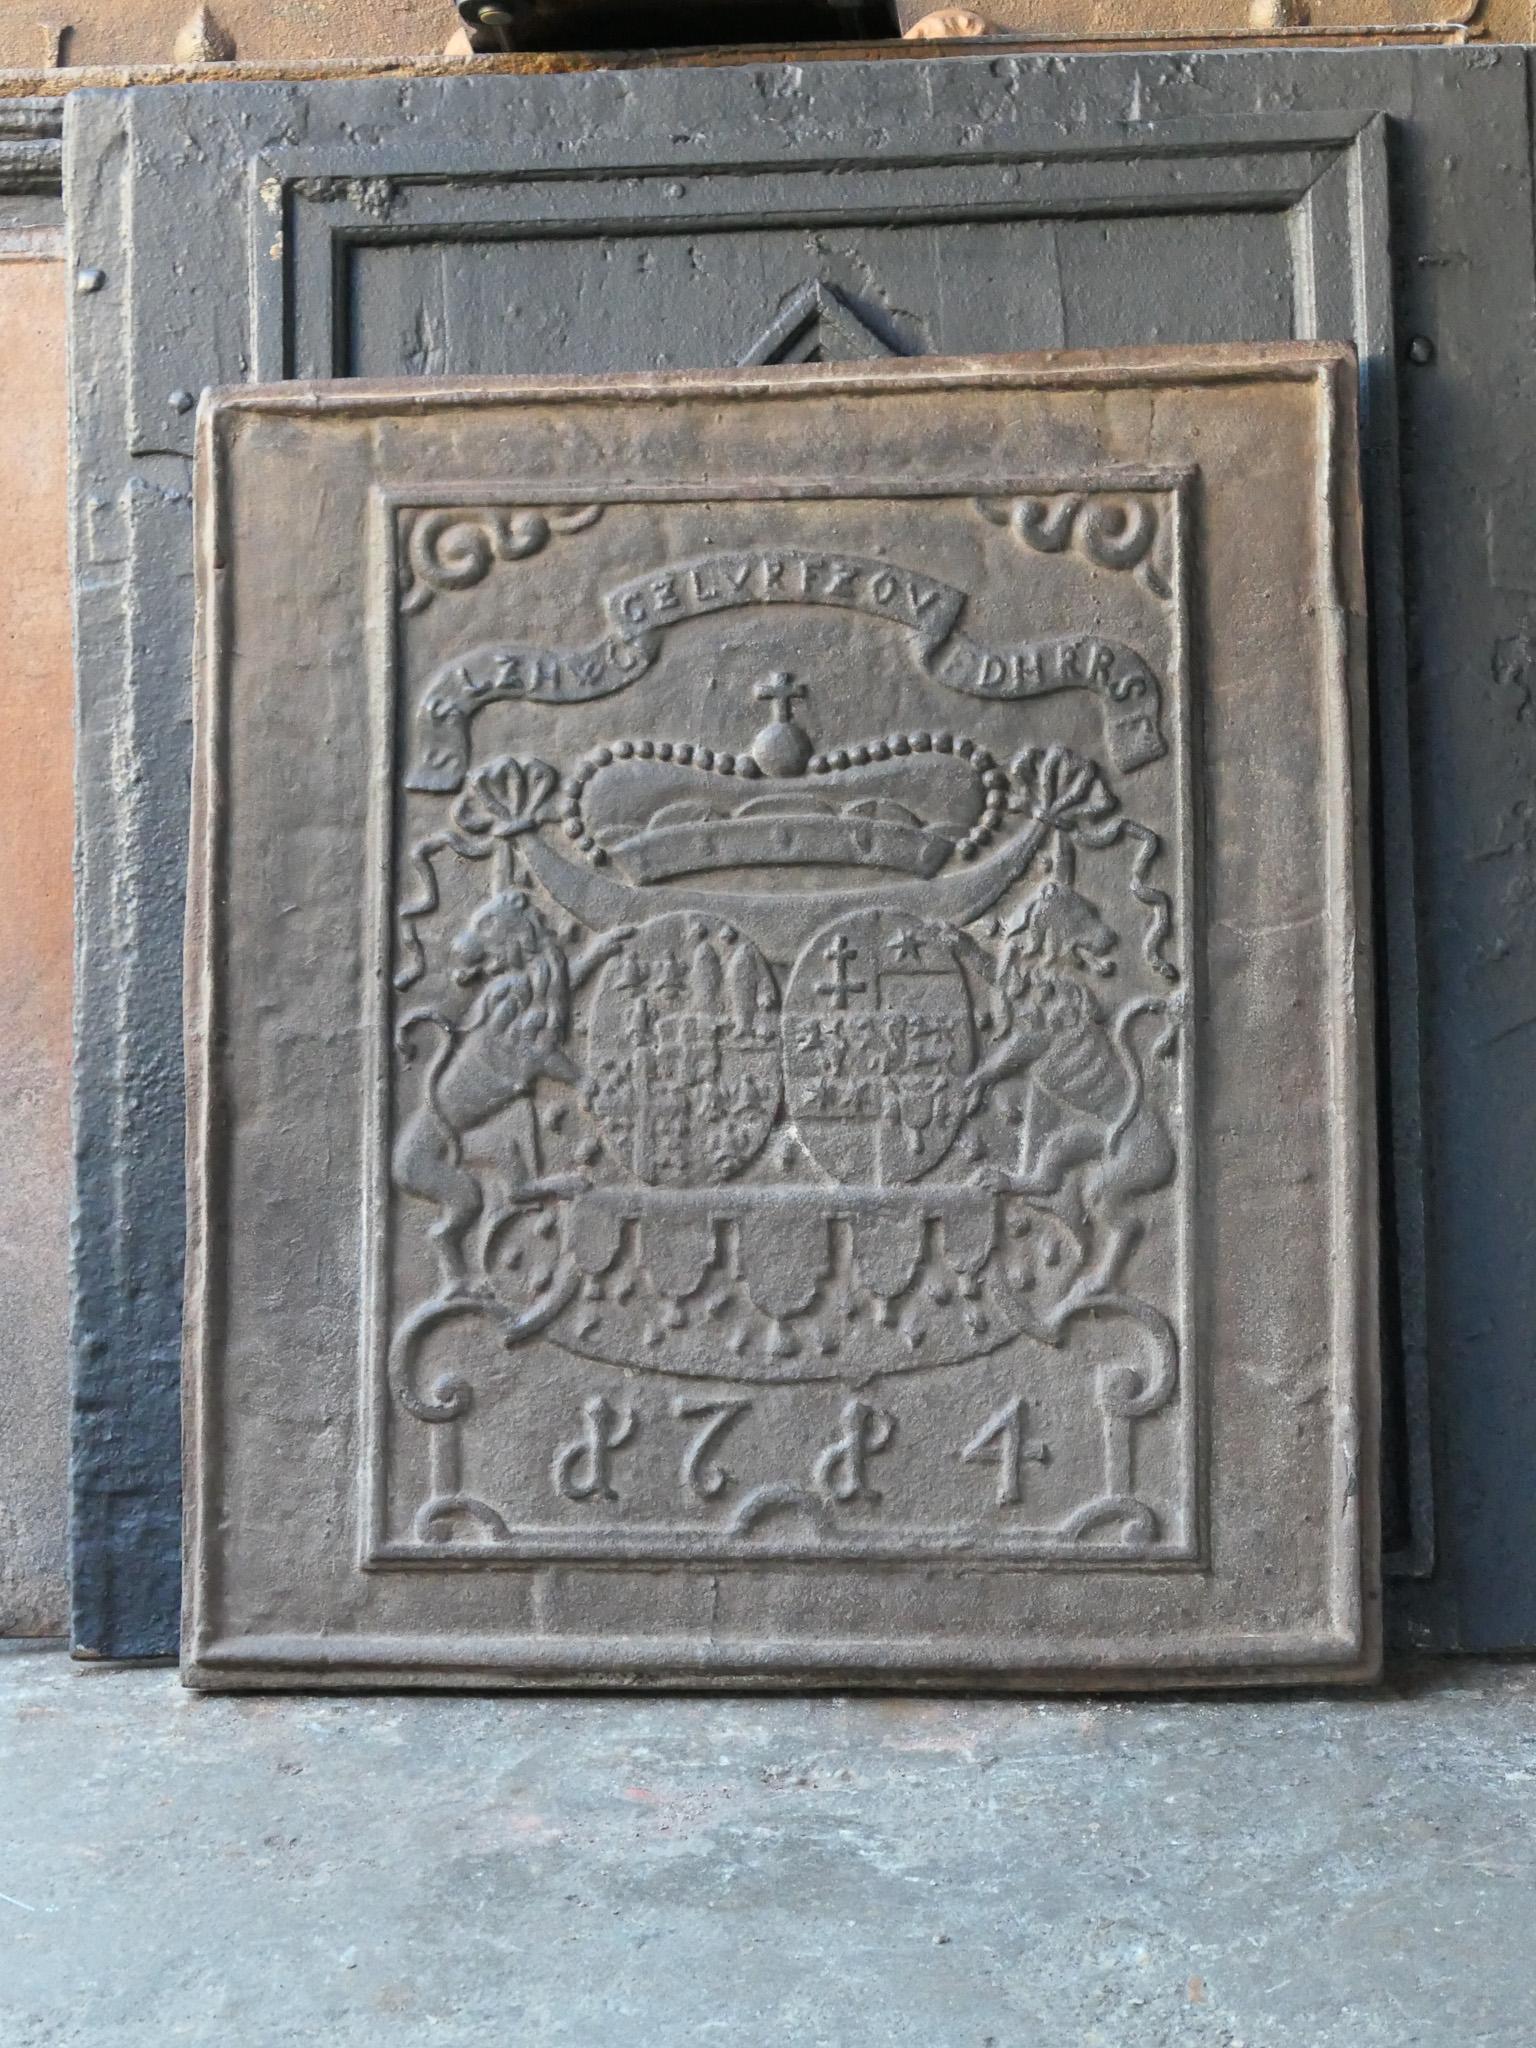 Belle plaque de cheminée allemande de style Louis XIV avec un blason inconnu. 

La plaque de cheminée est en fonte et a une patine brune. Sur demande, il peut être fabriqué en noir / étain avec polissage au four sans frais supplémentaires. 

Il est